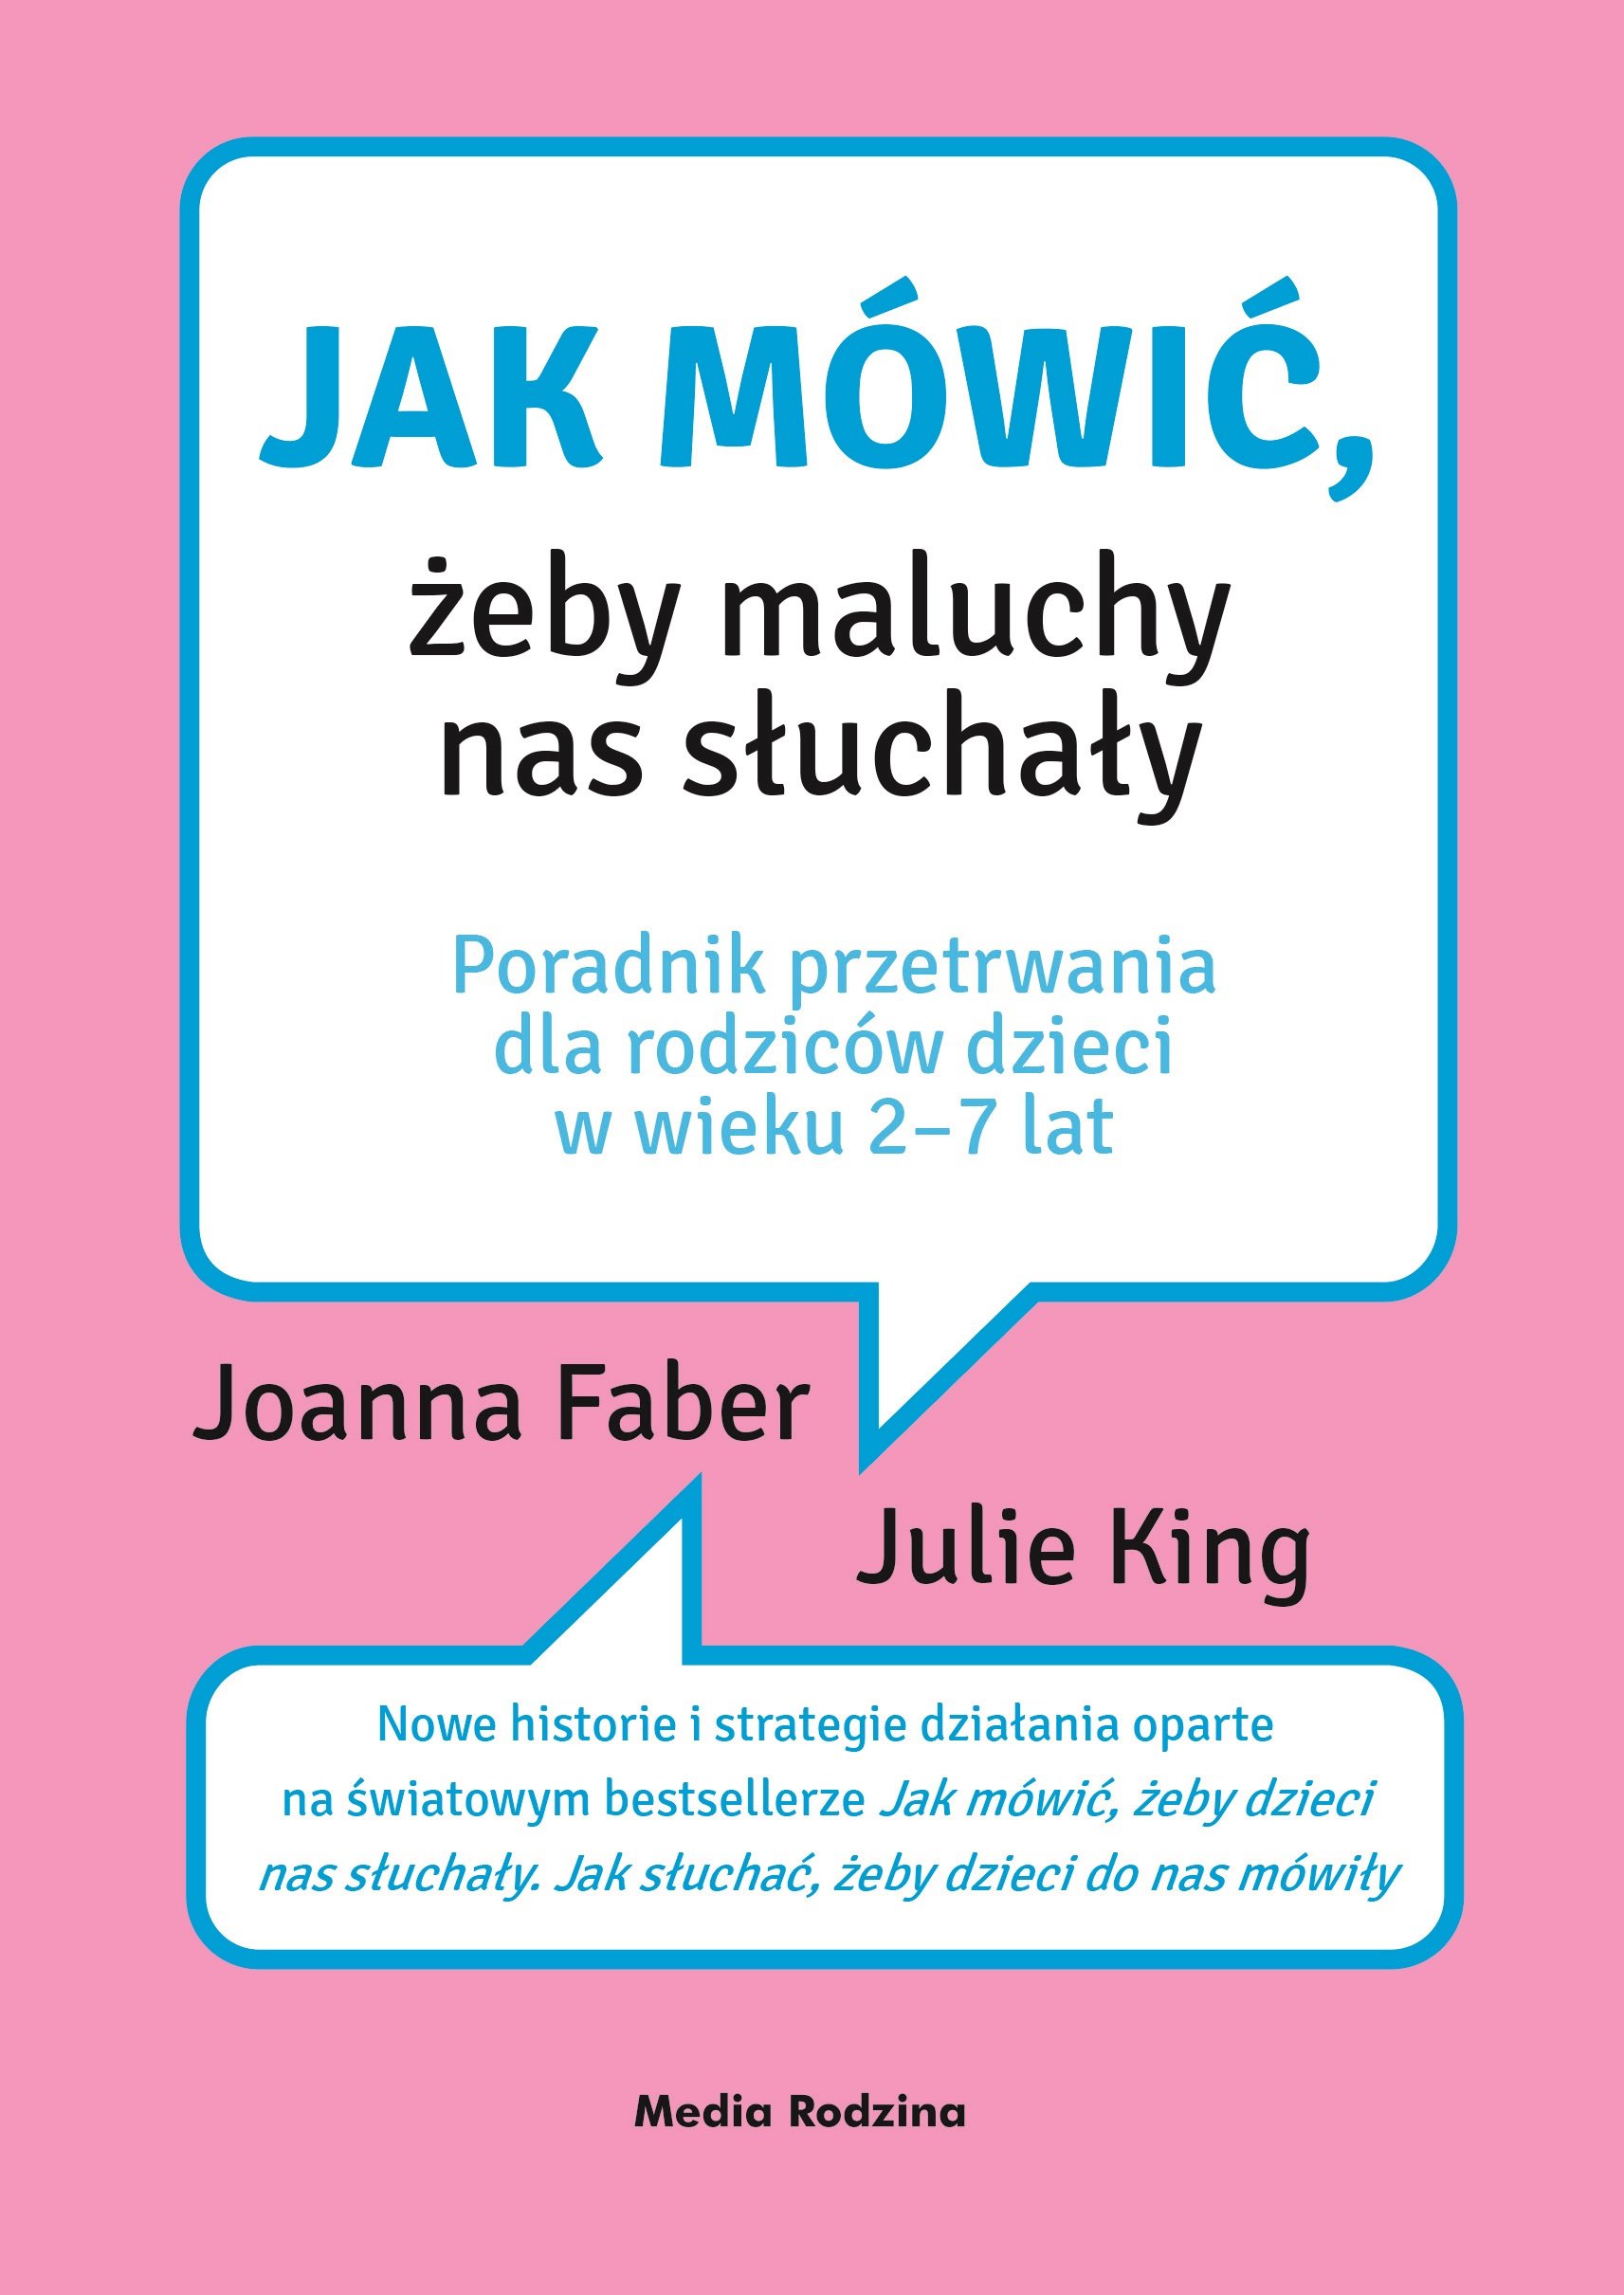 Jak mówić, żeby dzieci nas słuchały, jak słuchać, żeby dzieci do nas mówiły - autorki w Polsce!